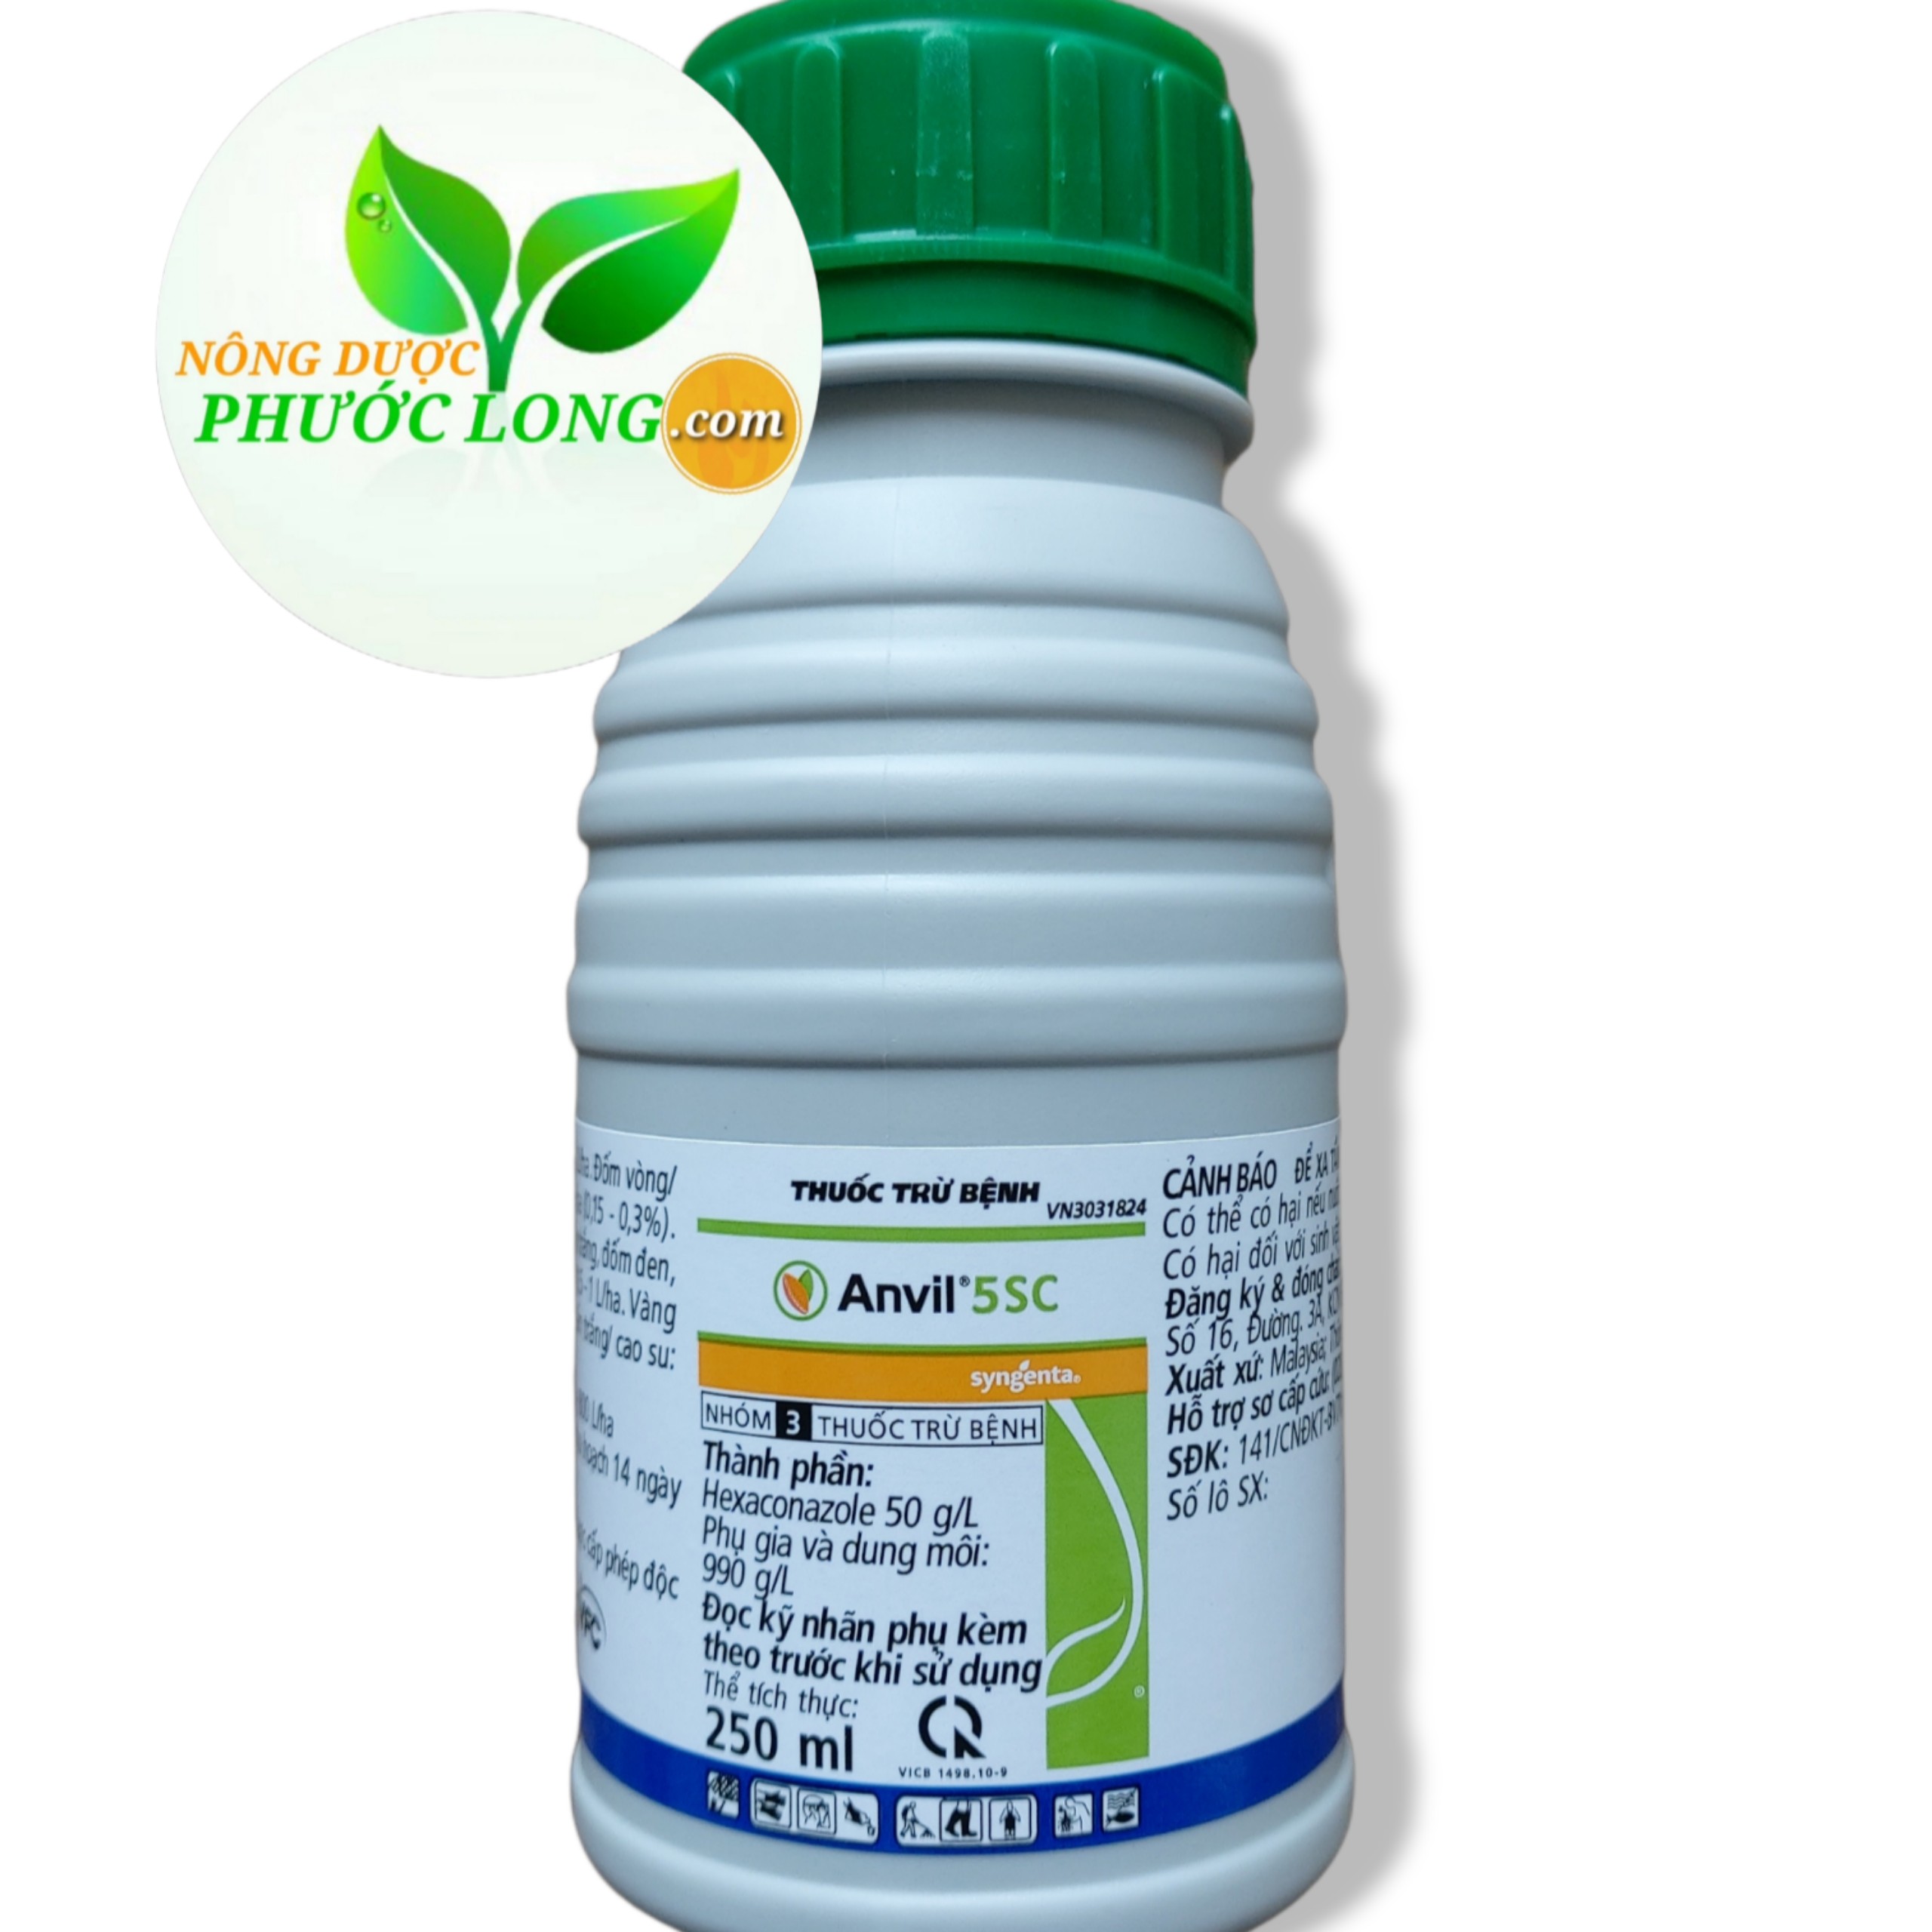 Anvil 5sc – Thuốc trừ bệnh rỉ sắt nấm hồng (chai 250ml)